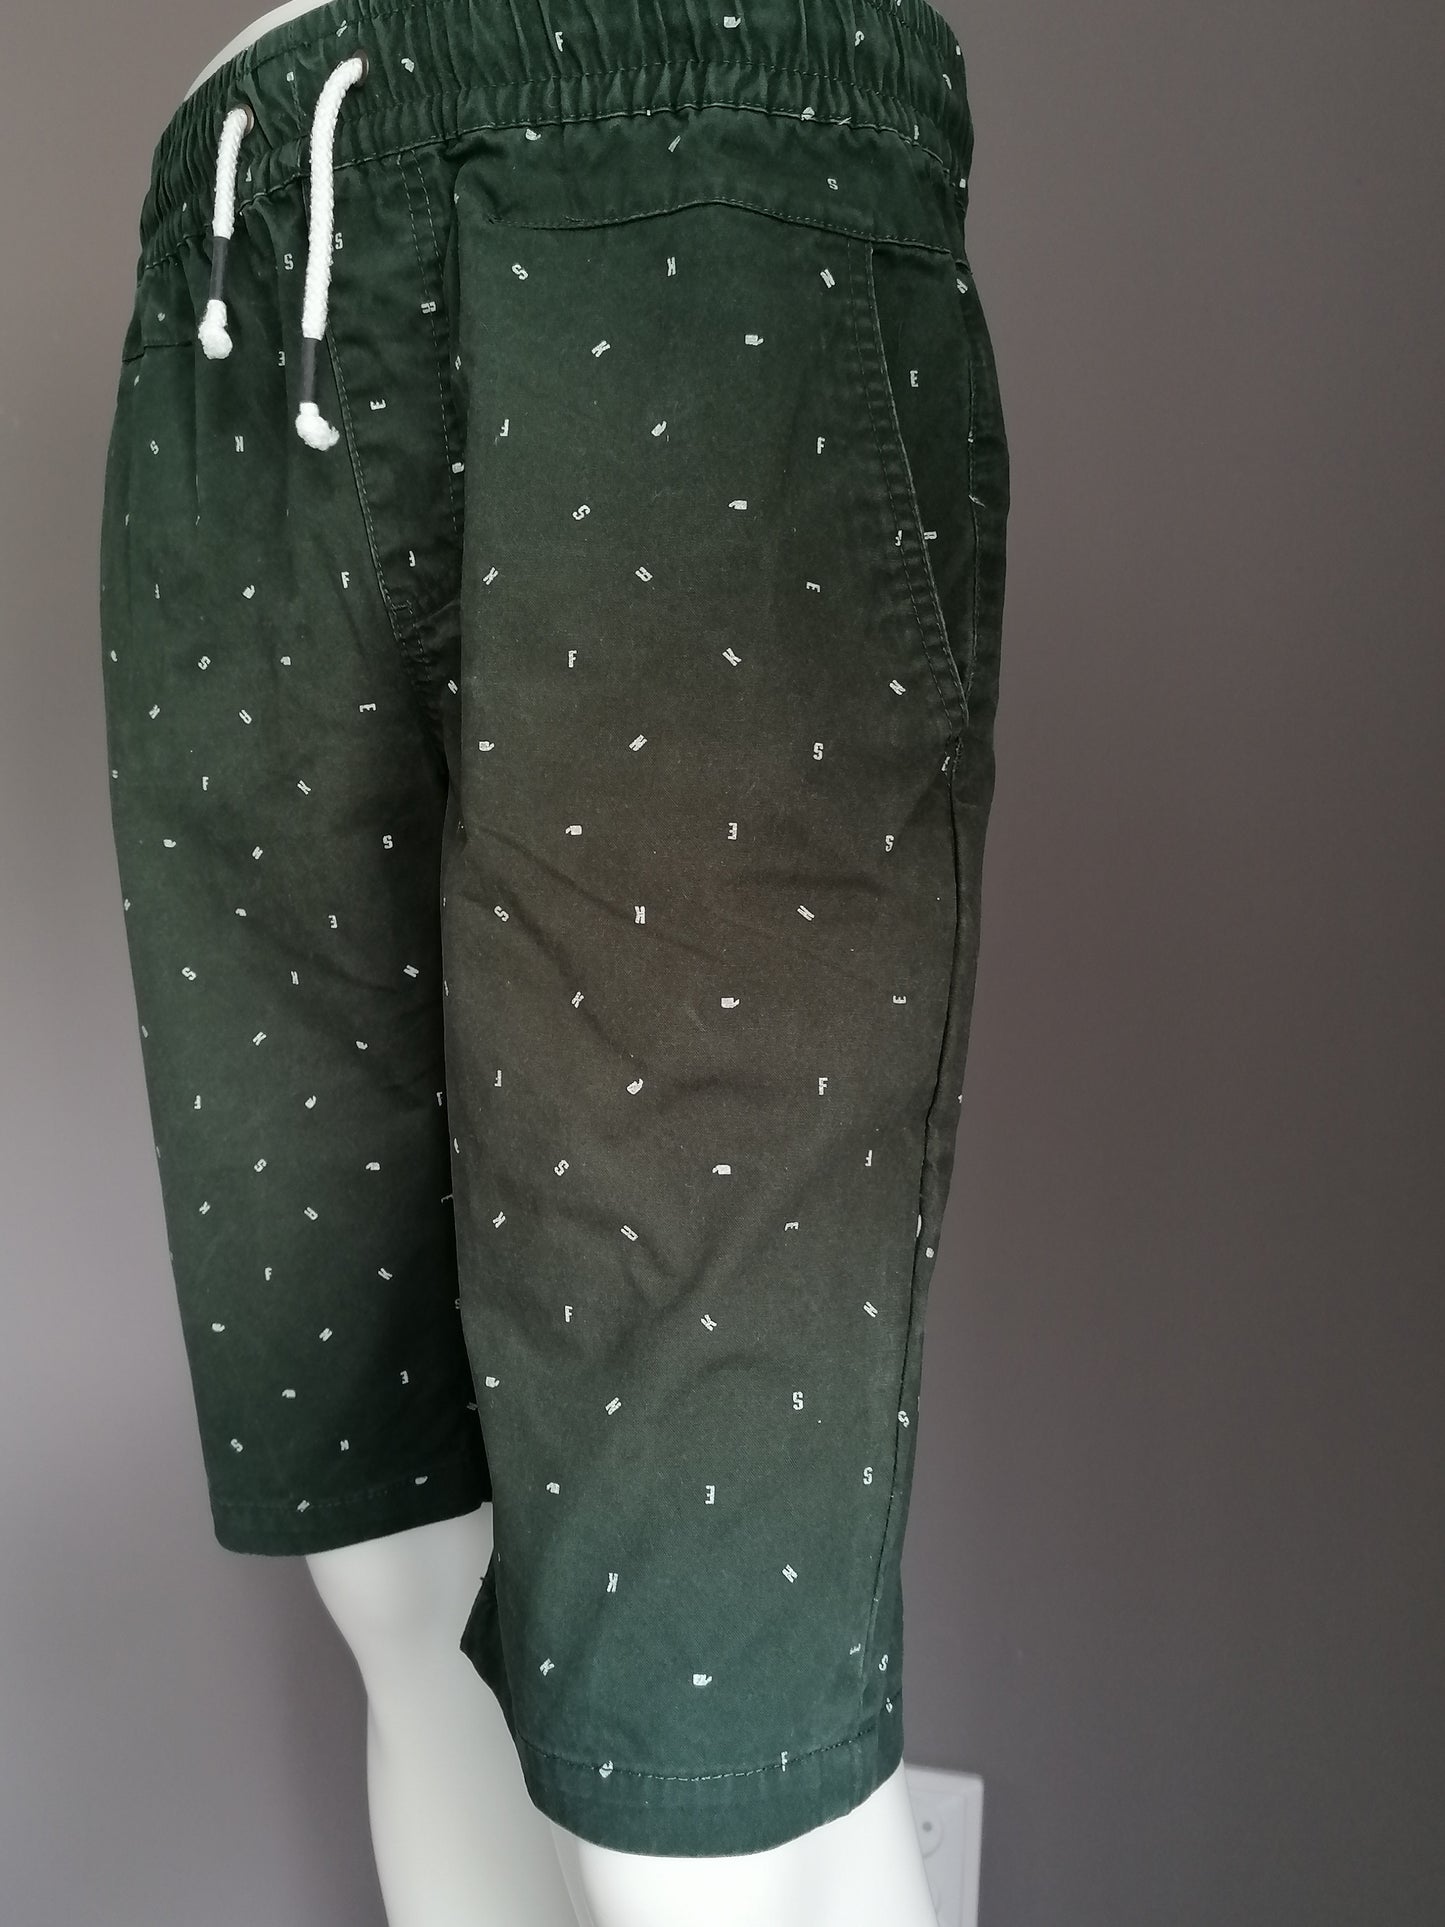 Pantalones cortos de zapatillas con banda elástica. Impresión de letra blanca verde. Talla M.